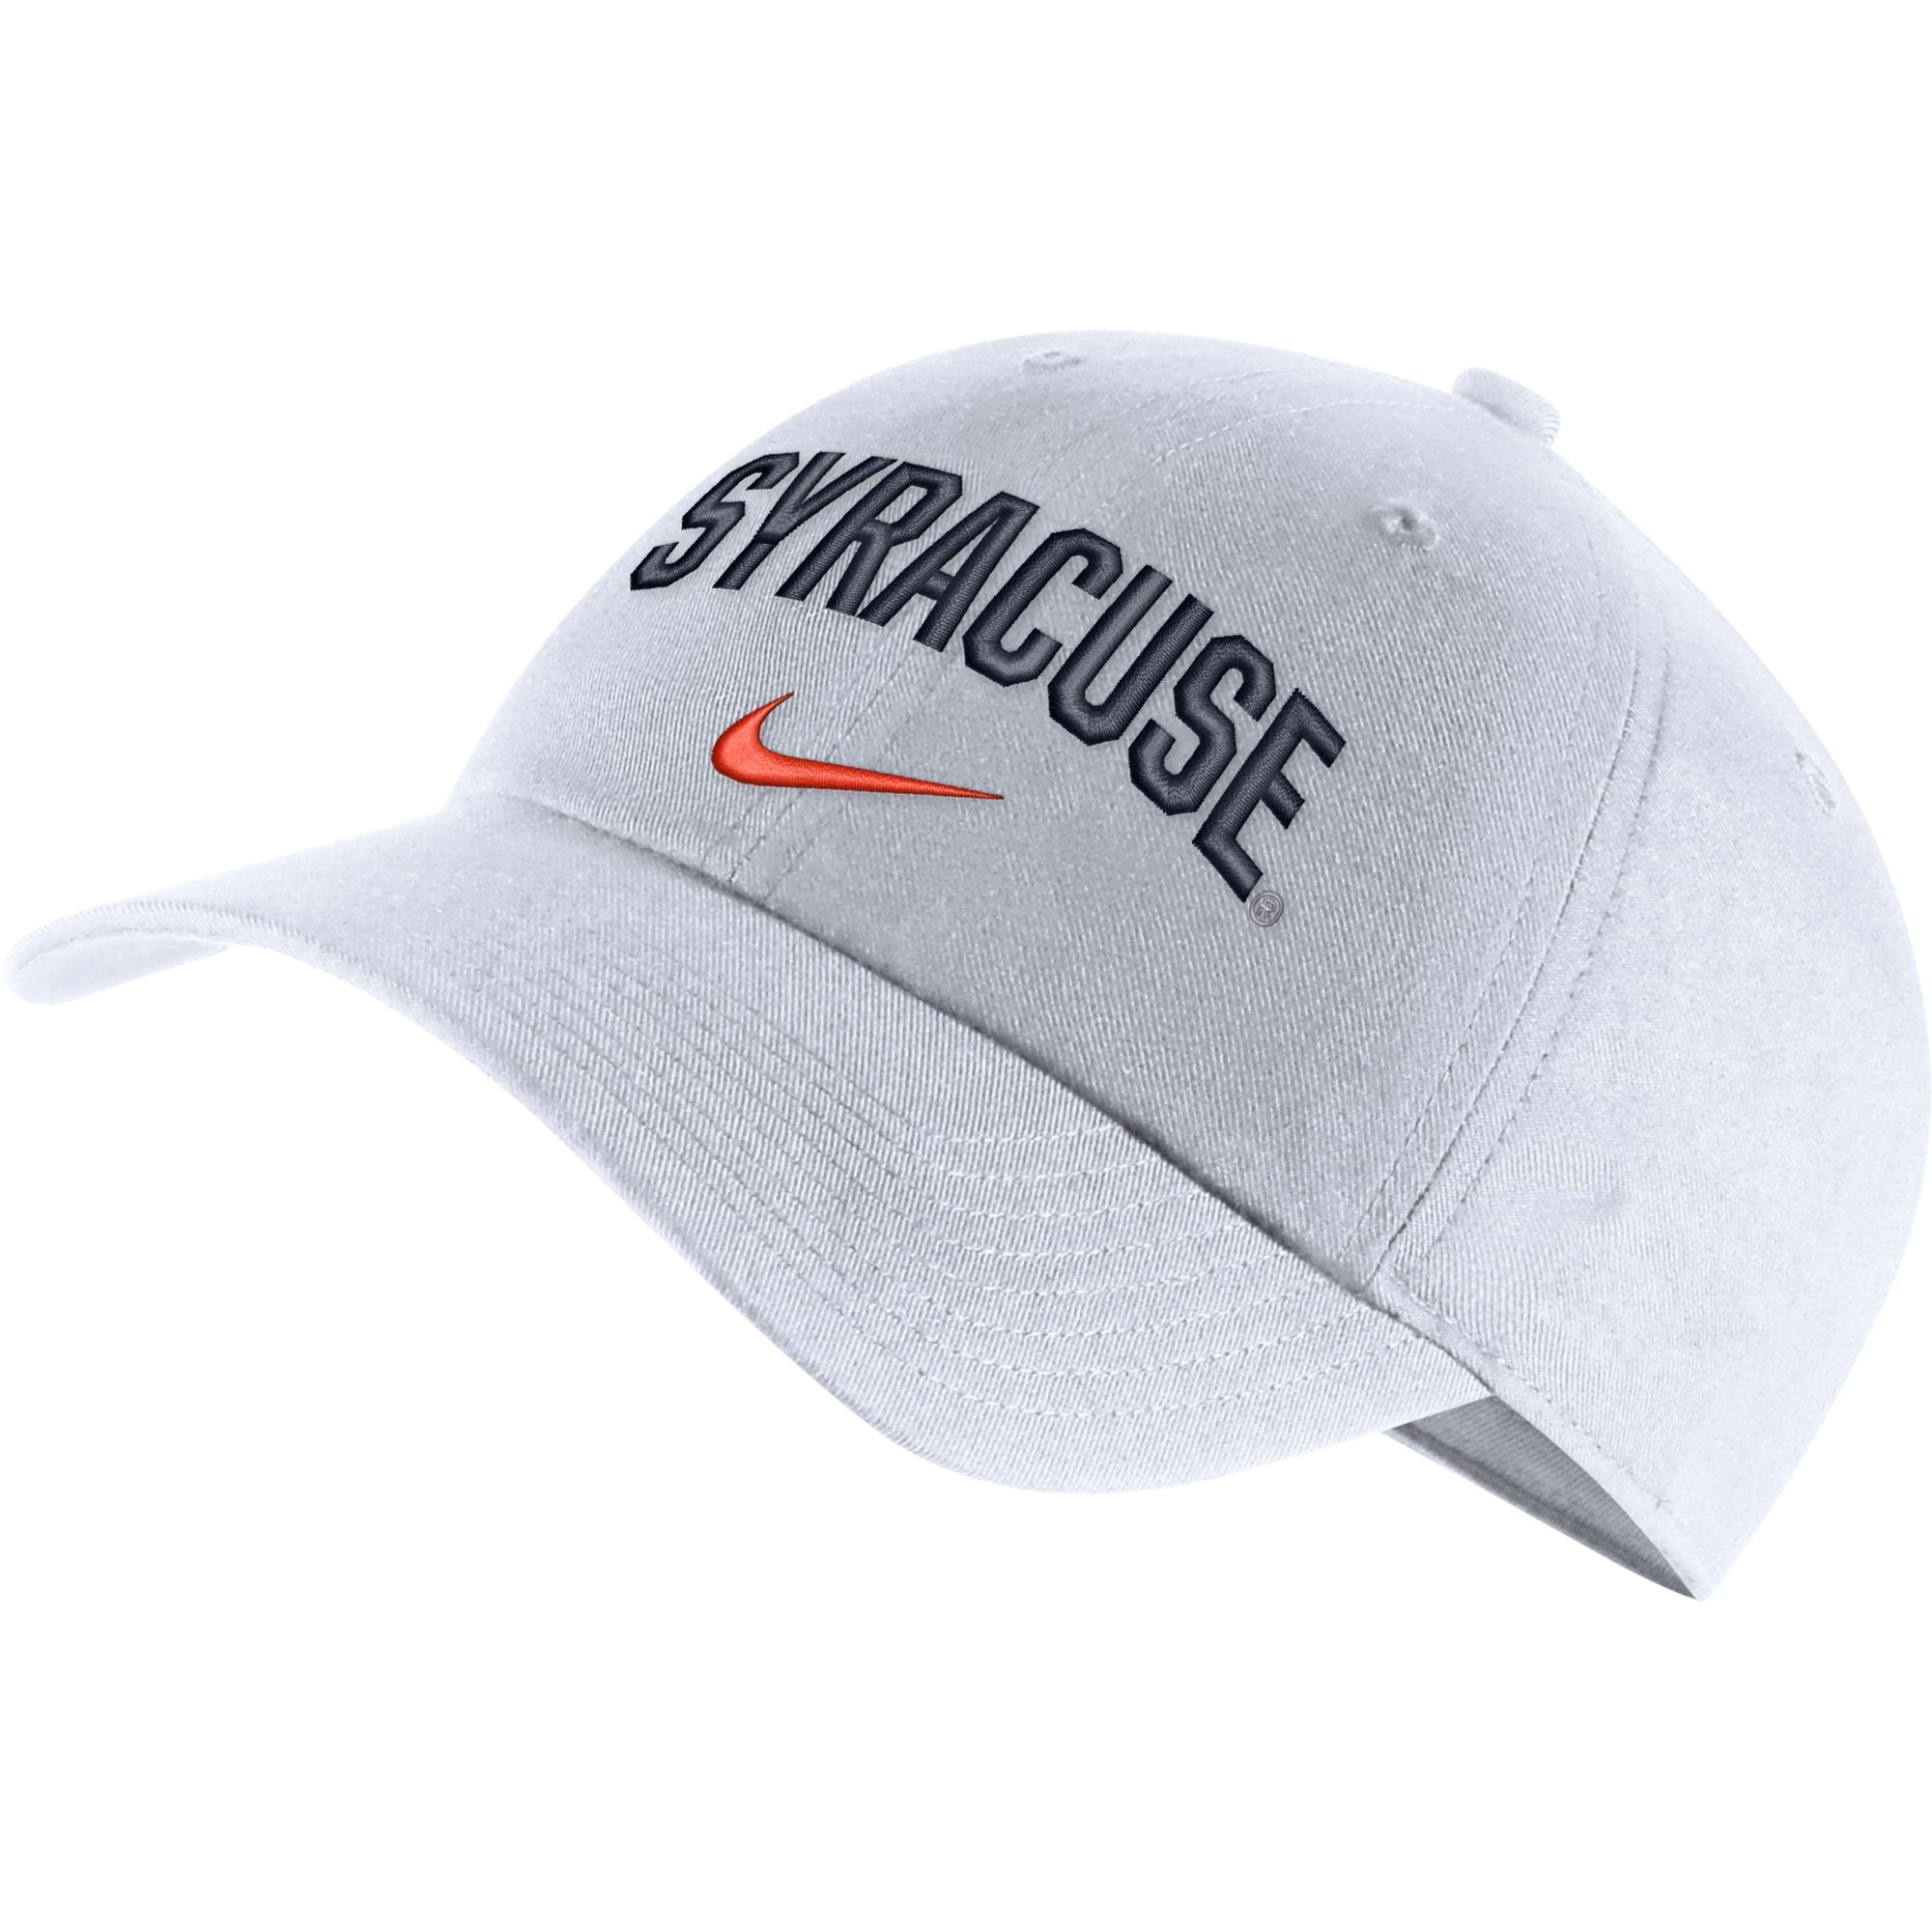 Nike Syracuse Heritage86 Wordmark Hat White / One Size